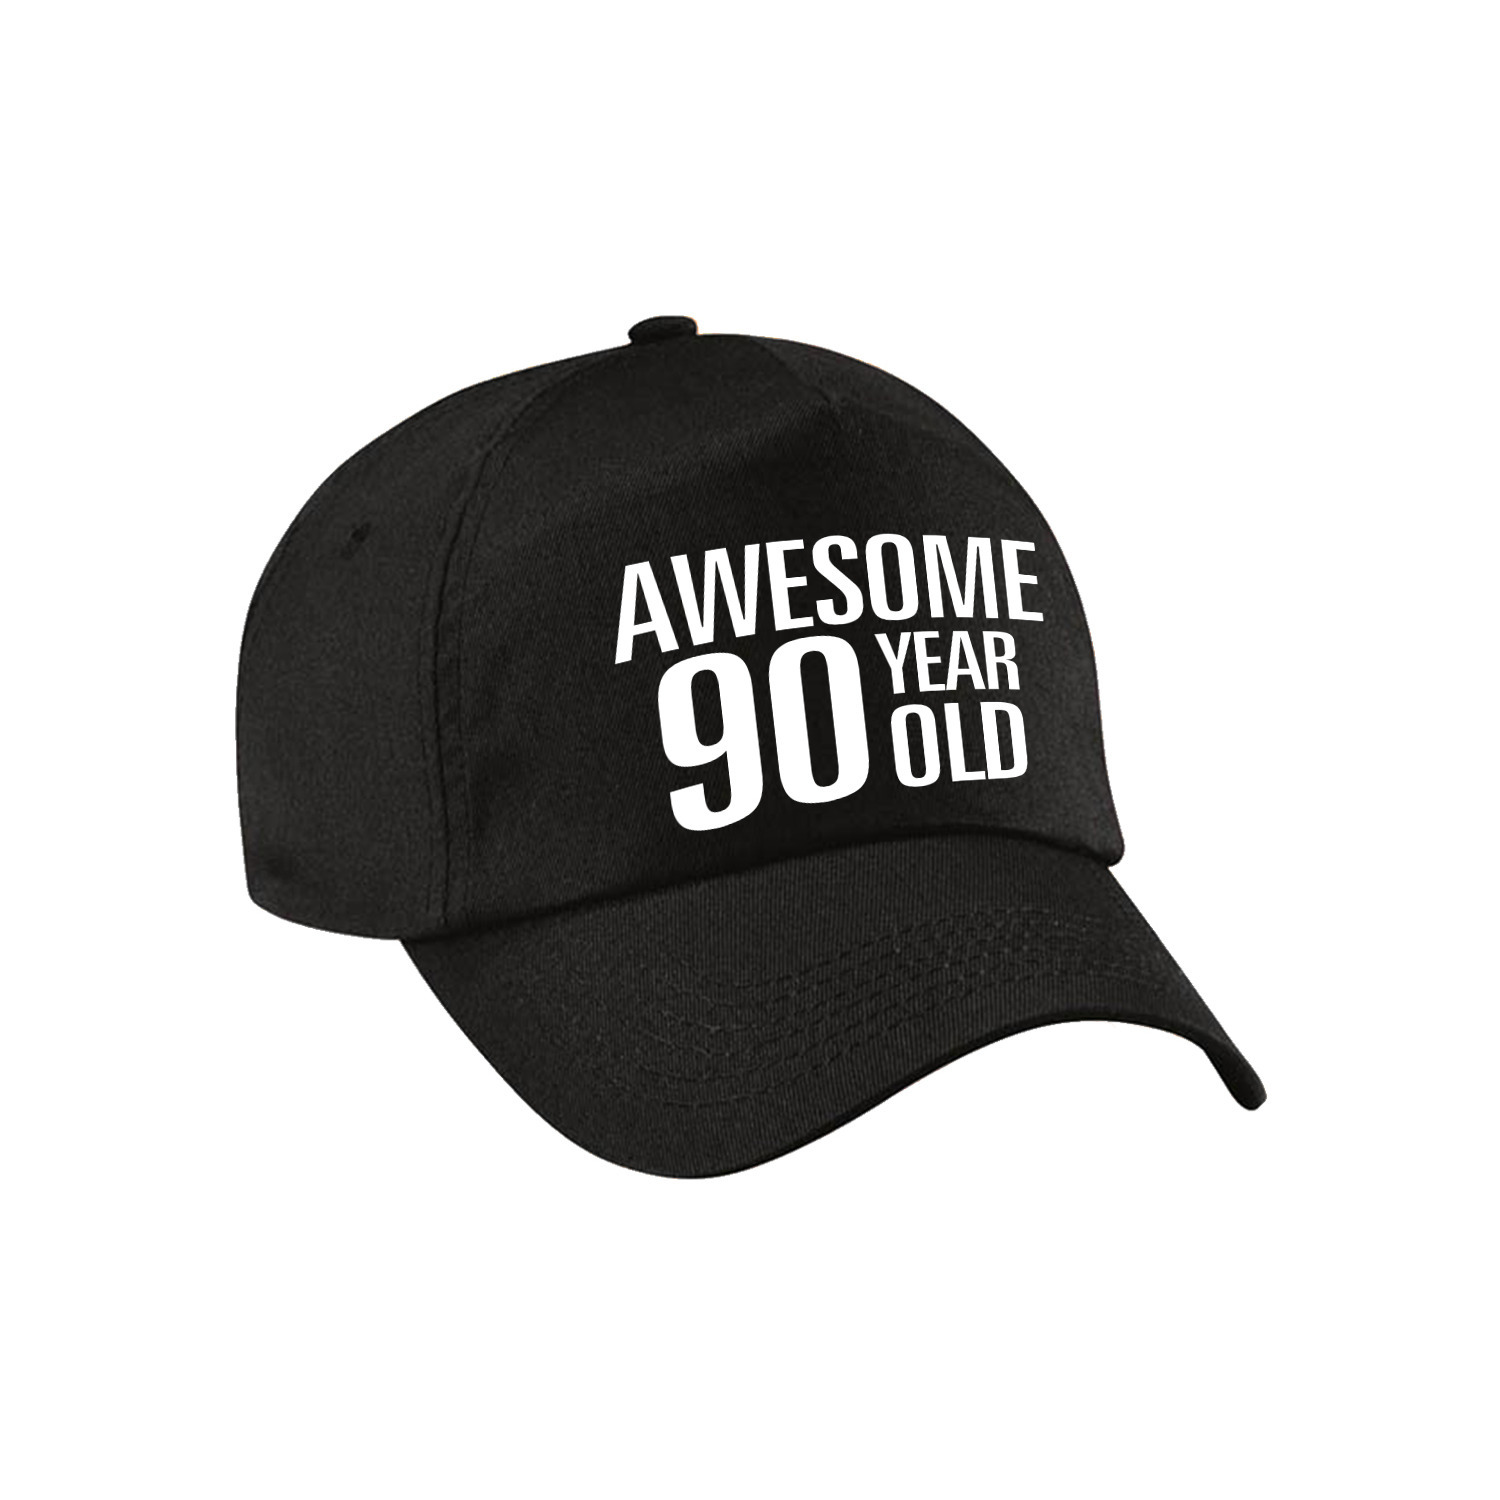 Awesome 90 year old verjaardag pet / cap zwart voor dames en heren